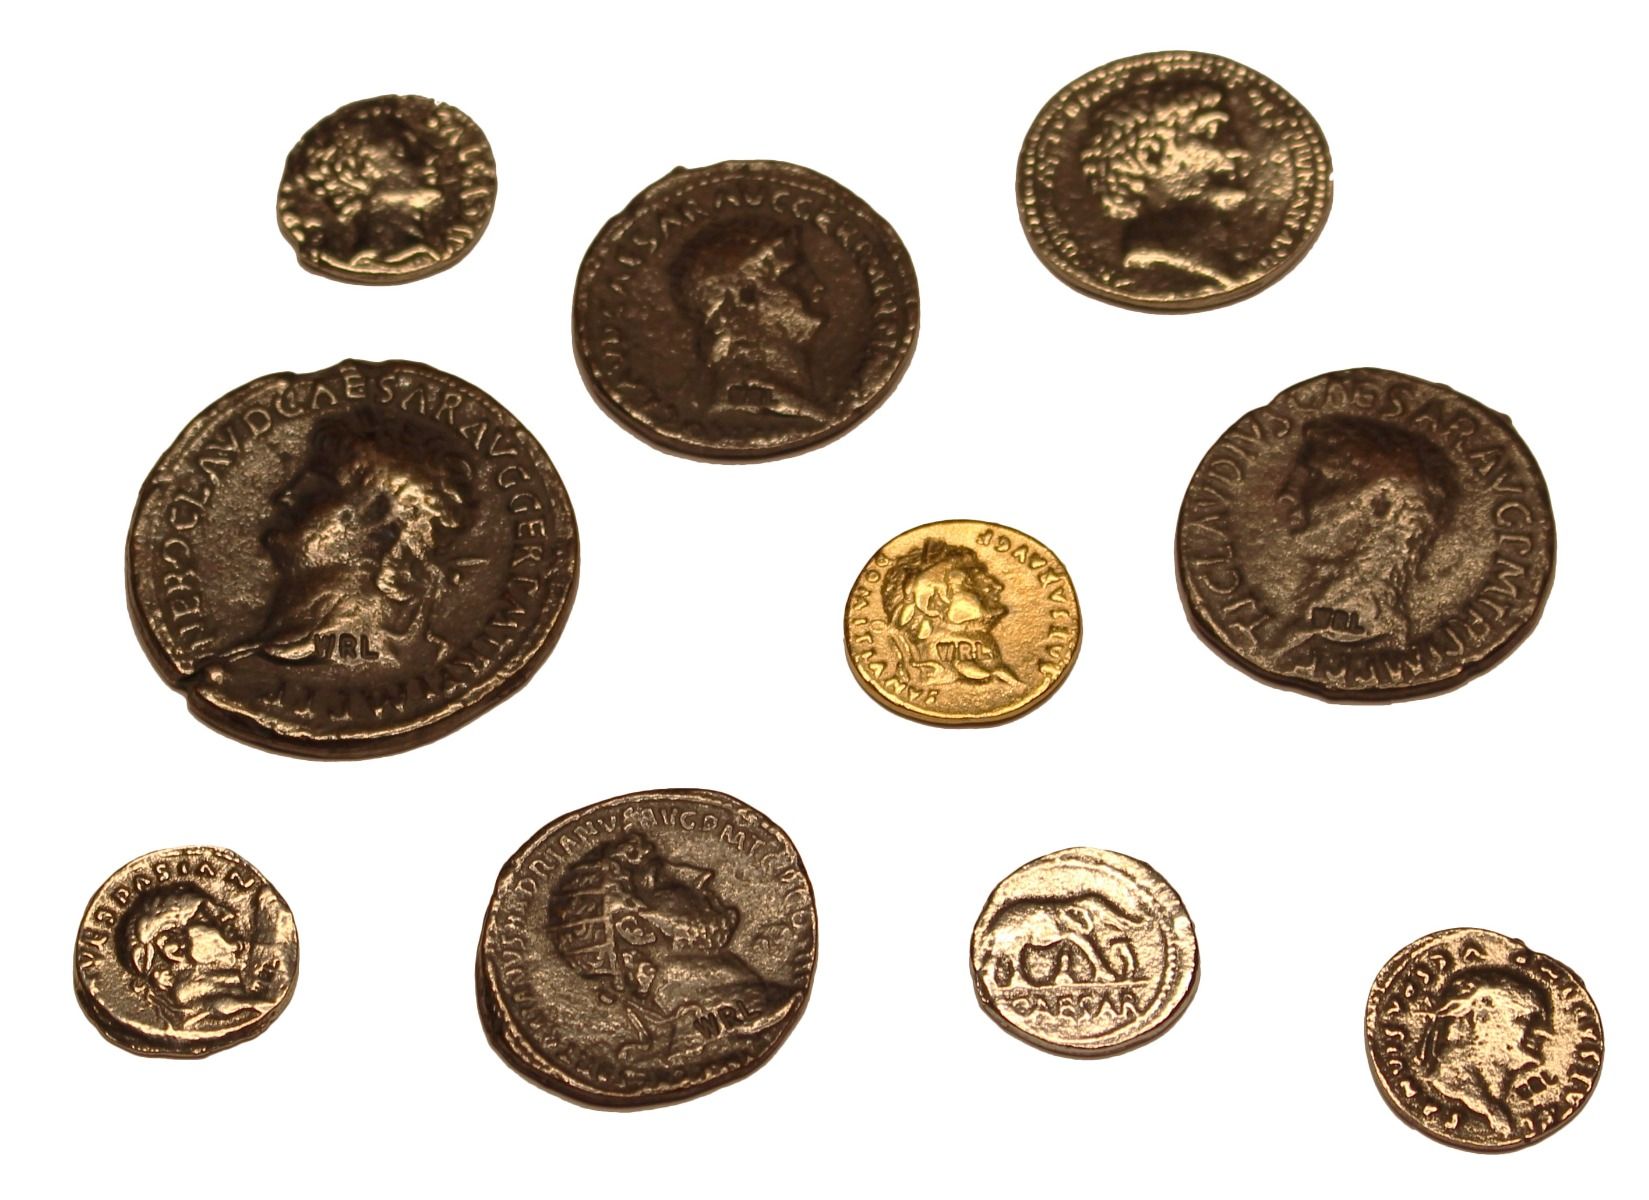 Münzsammlung mit 10 römischen Münzen